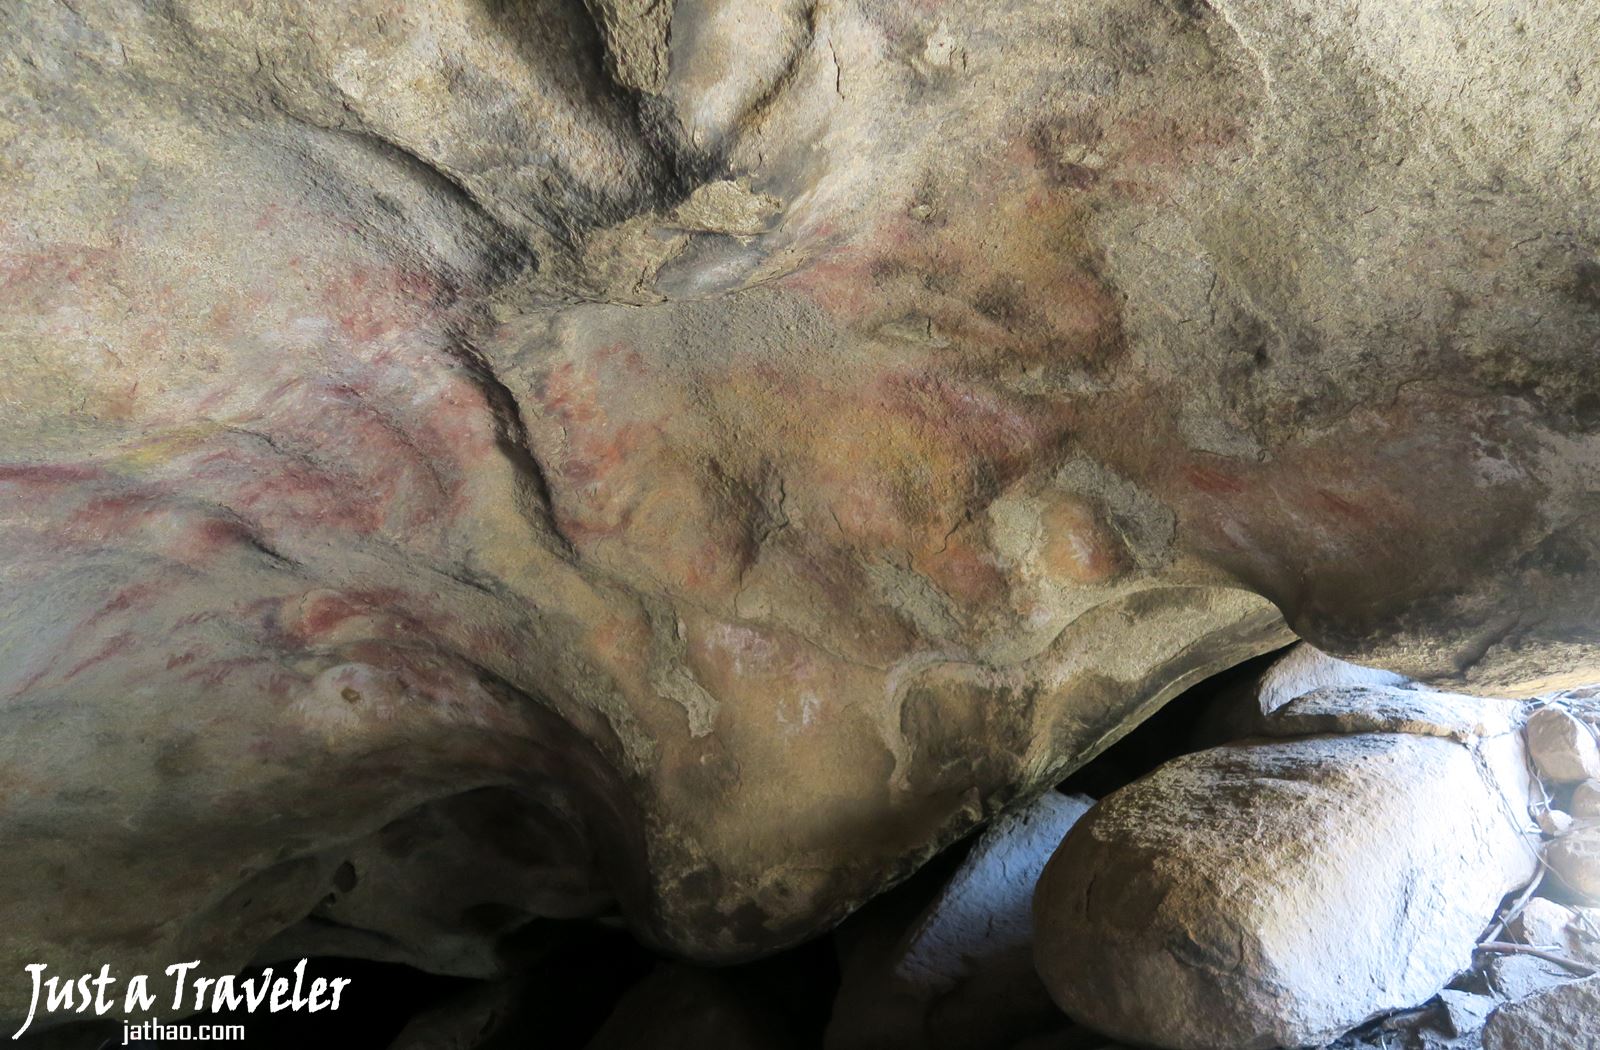 澳洲-西澳-伯斯-推薦-景點-波浪岩-莫卡洞-Mulka's Cave-自由行-旅遊-行程-一日遊-二日遊-遊記-旅遊-觀光-Australia-Perth-Wave-Rock